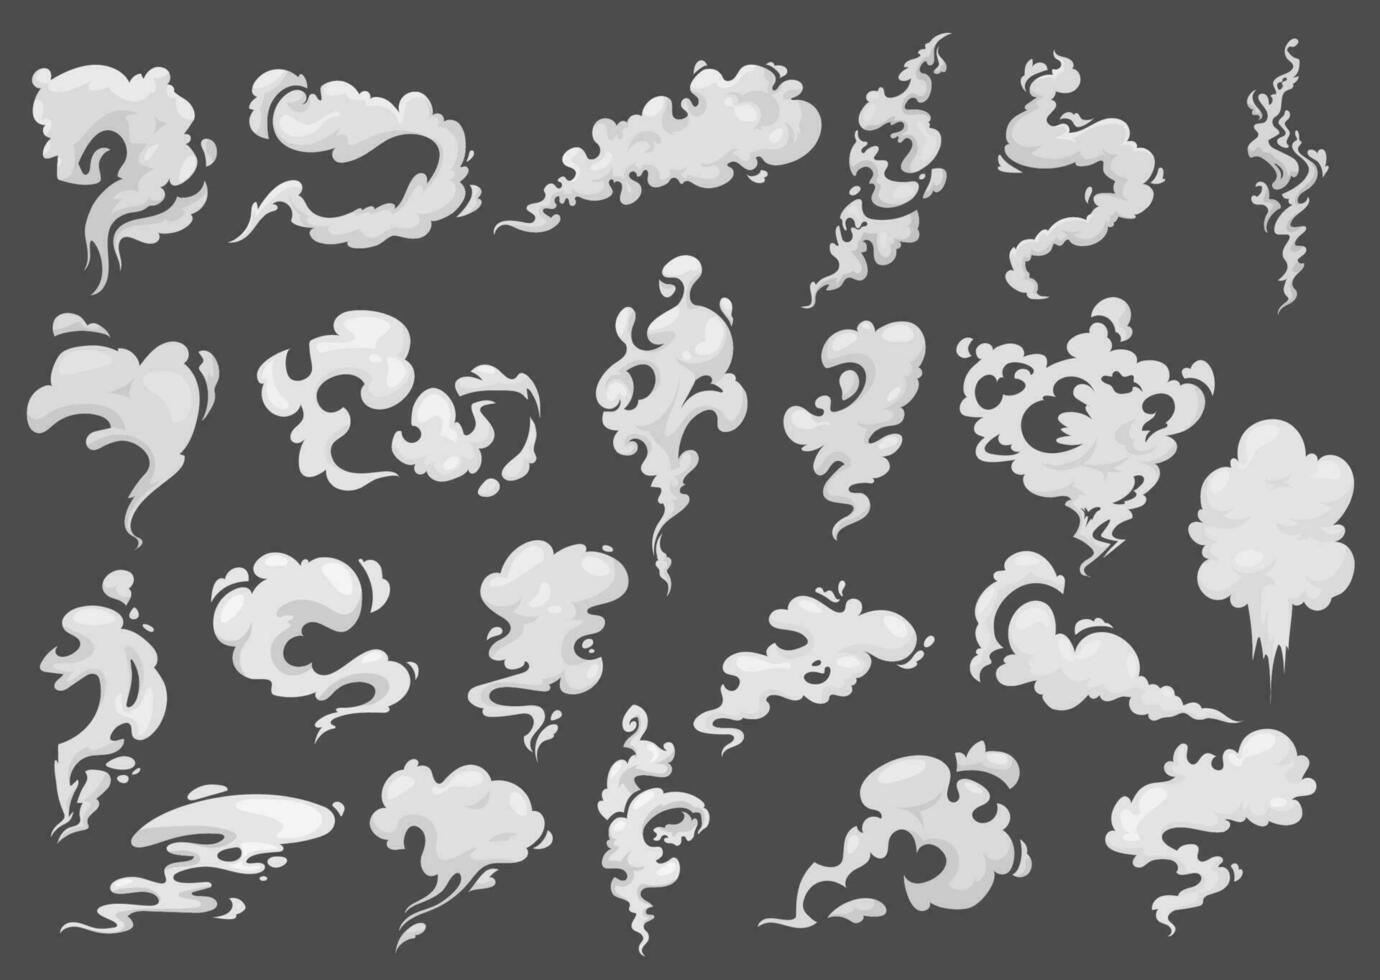 dessin animé fumée des nuages, vecteur blanc fumant vapeur